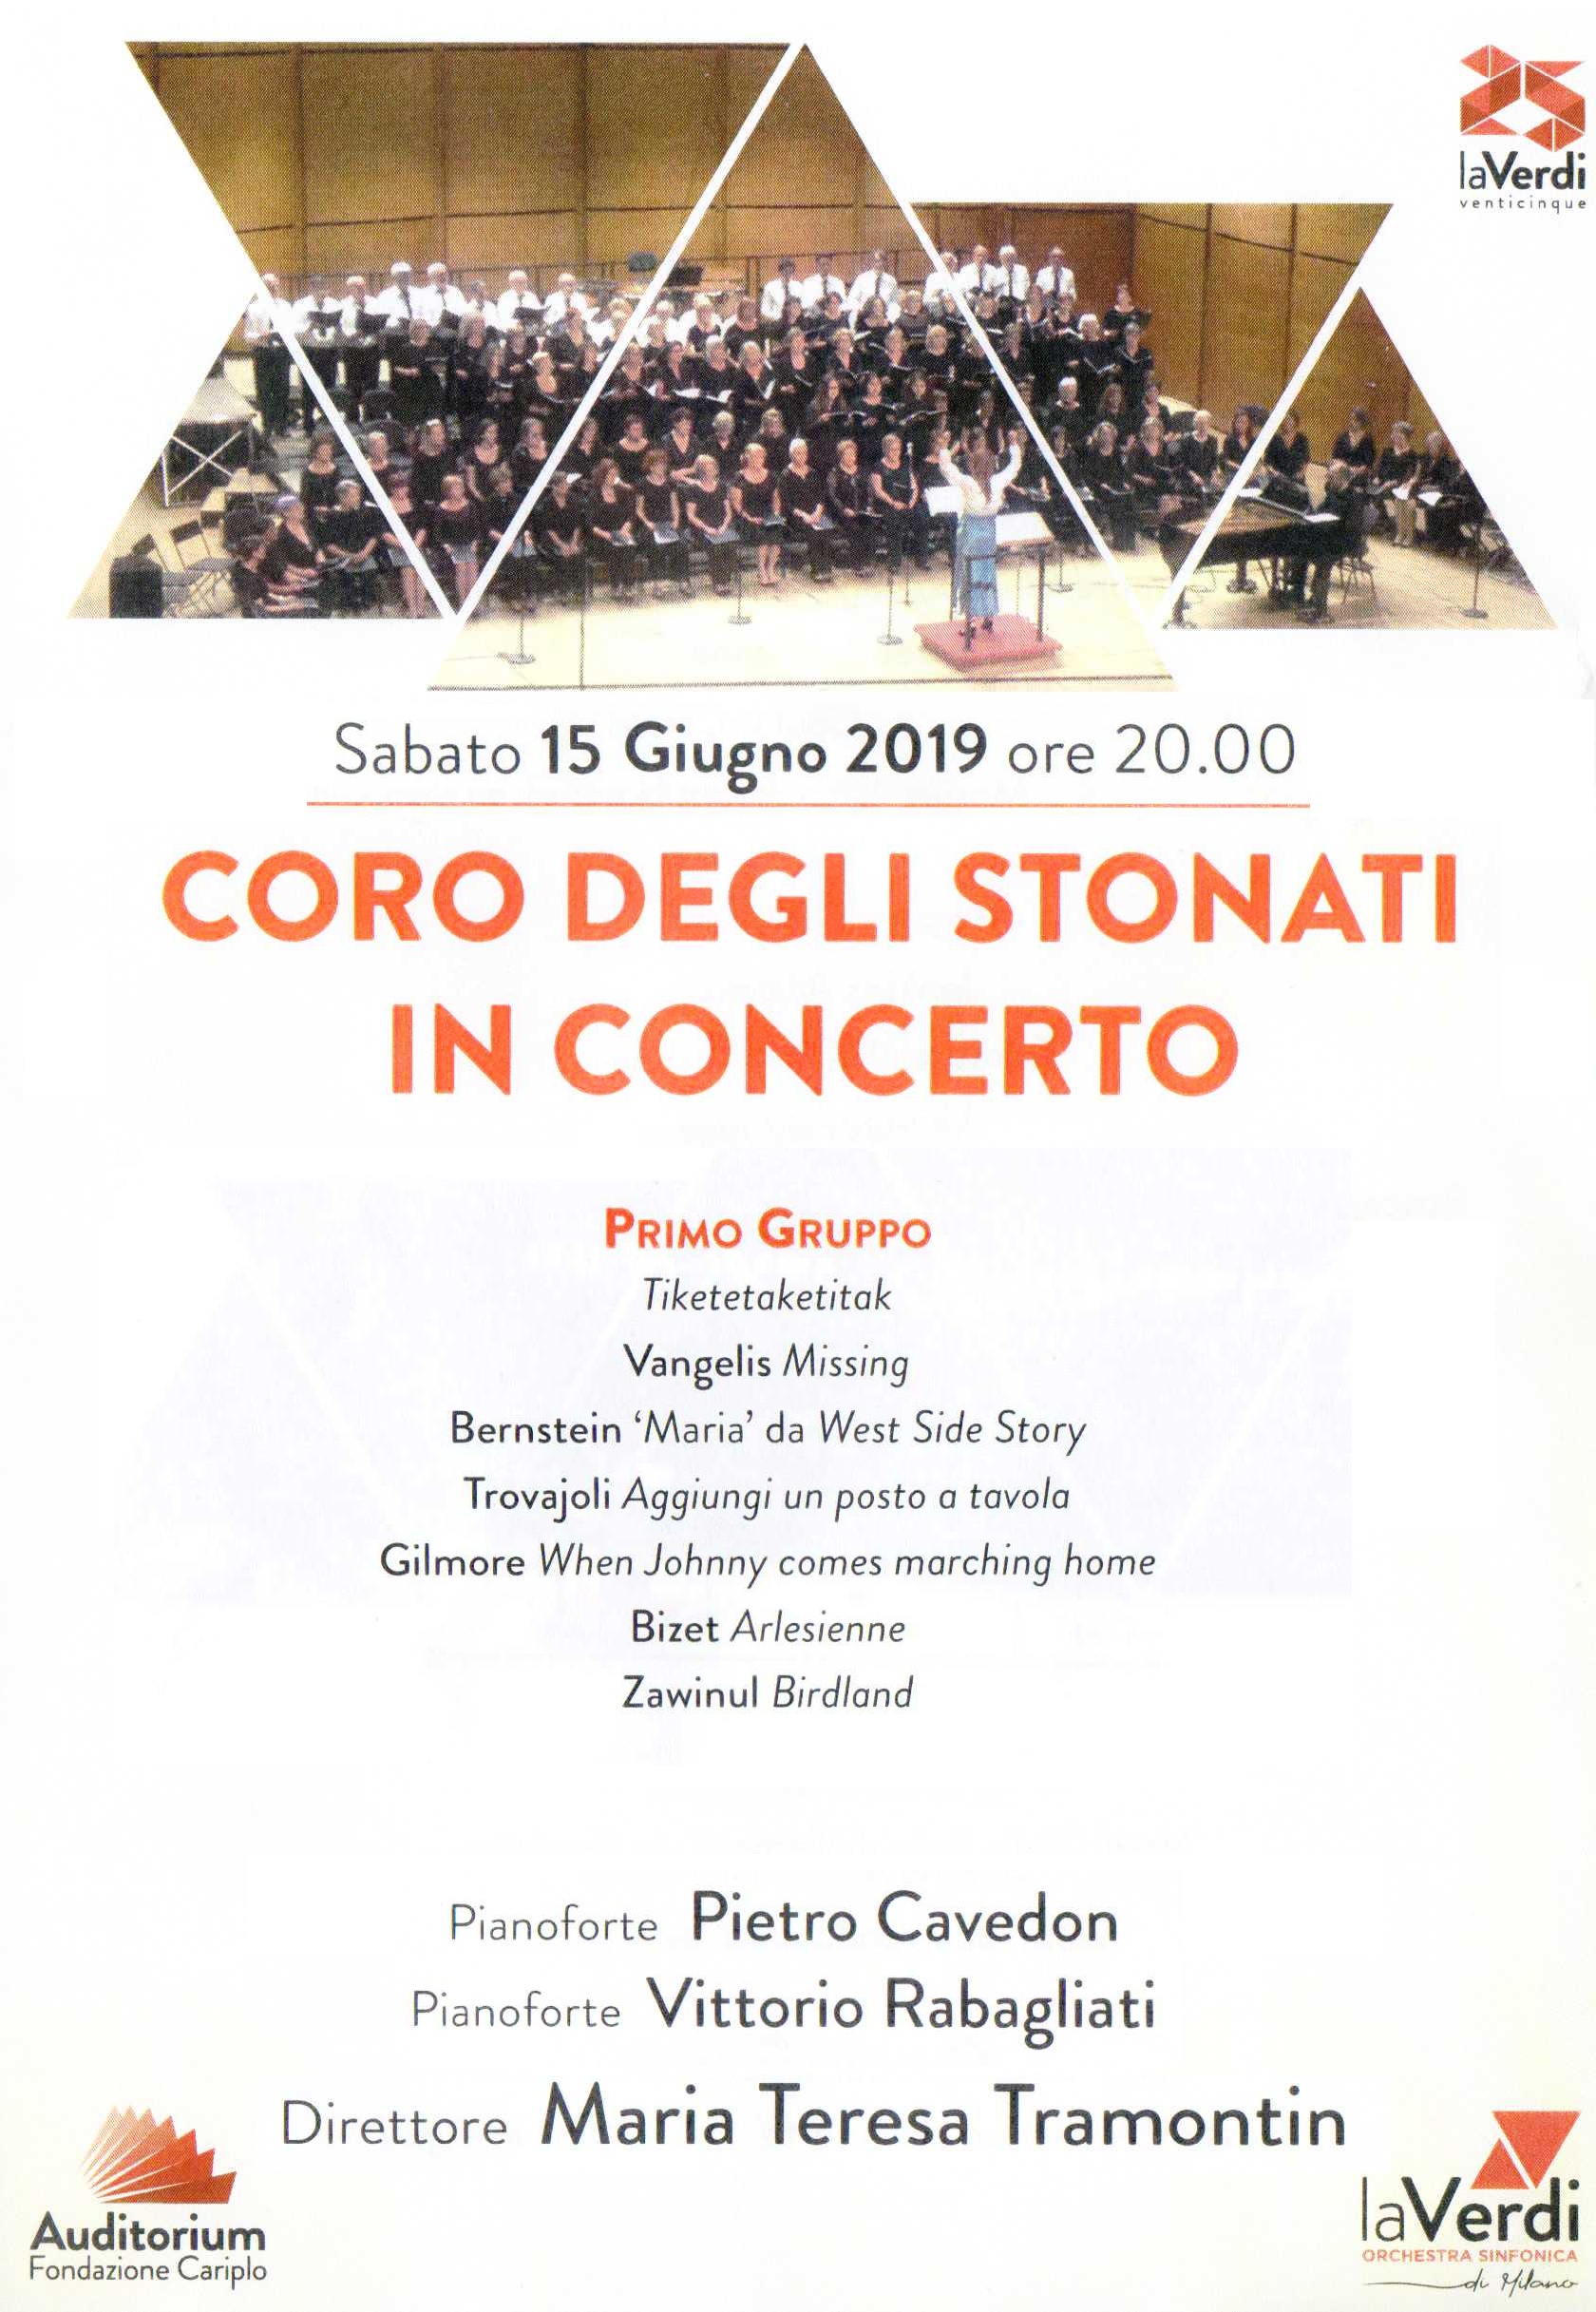 Concerto Coro laVerdi 2019 Stonati